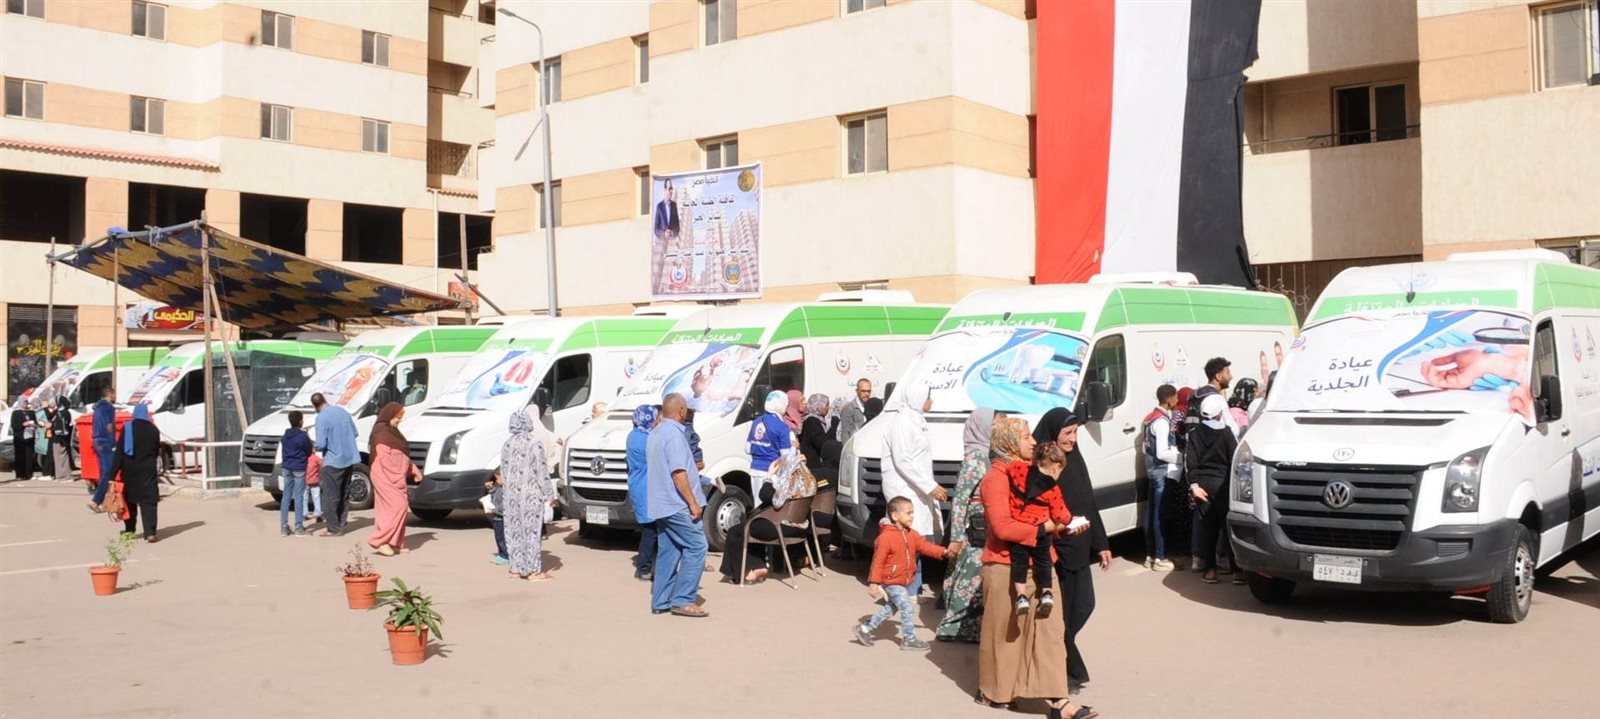 المنطقة الشمالية العسكرية تنظم عددًا من القوافل الطبية بأحياء بشاير الخير بالإسكندرية